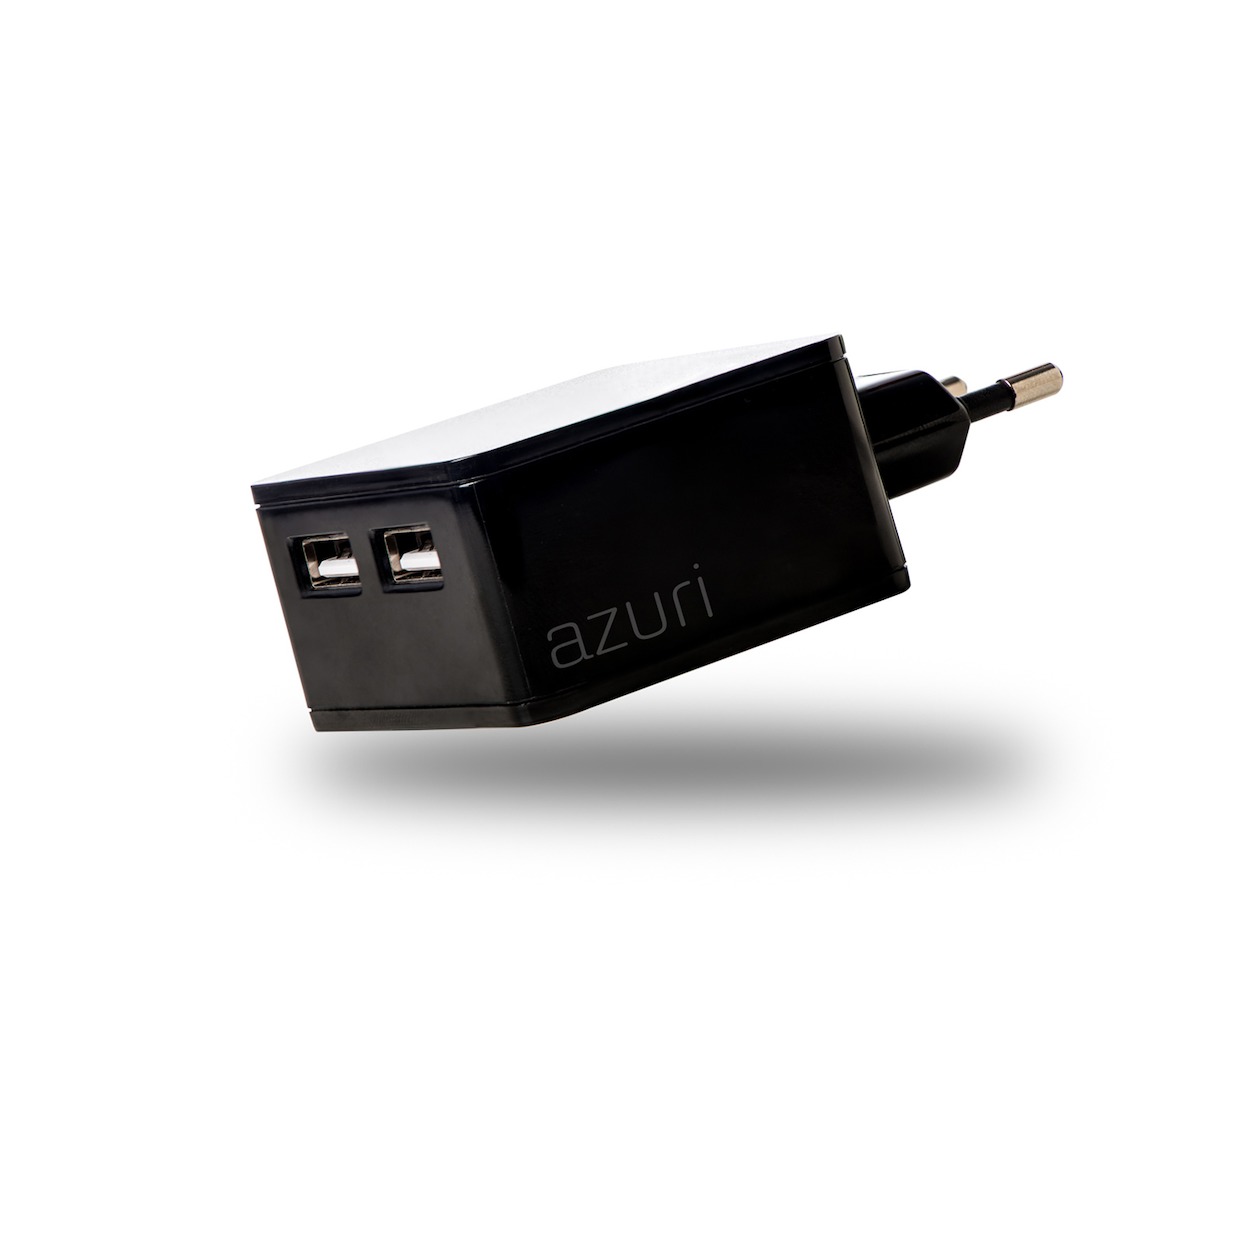 Telefoonleader - Azuri Thuislader 2 x USB 4.8Amp zwart